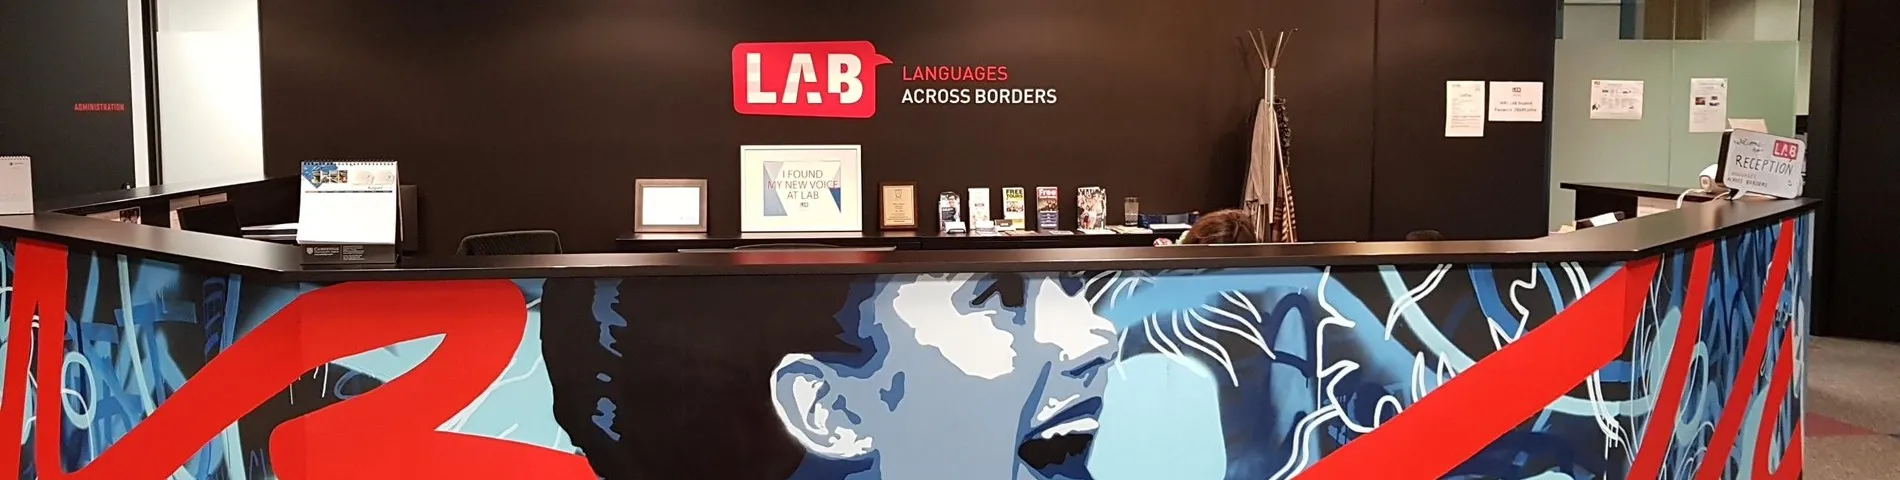 LAB - Languages Across Borders snímek 1	